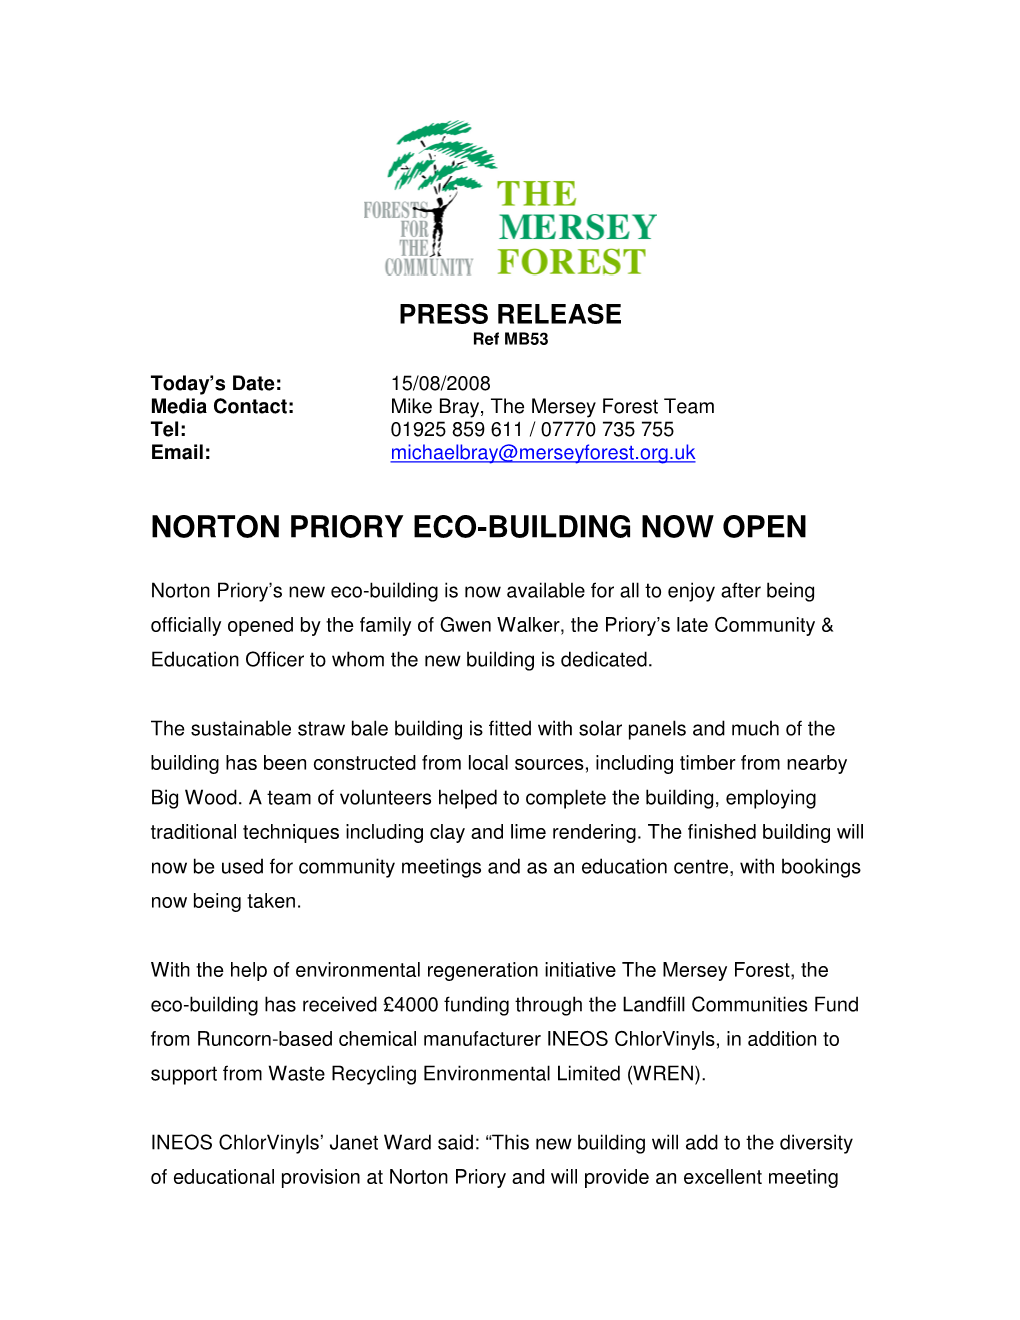 Norton Priory Eco-Building Now Open